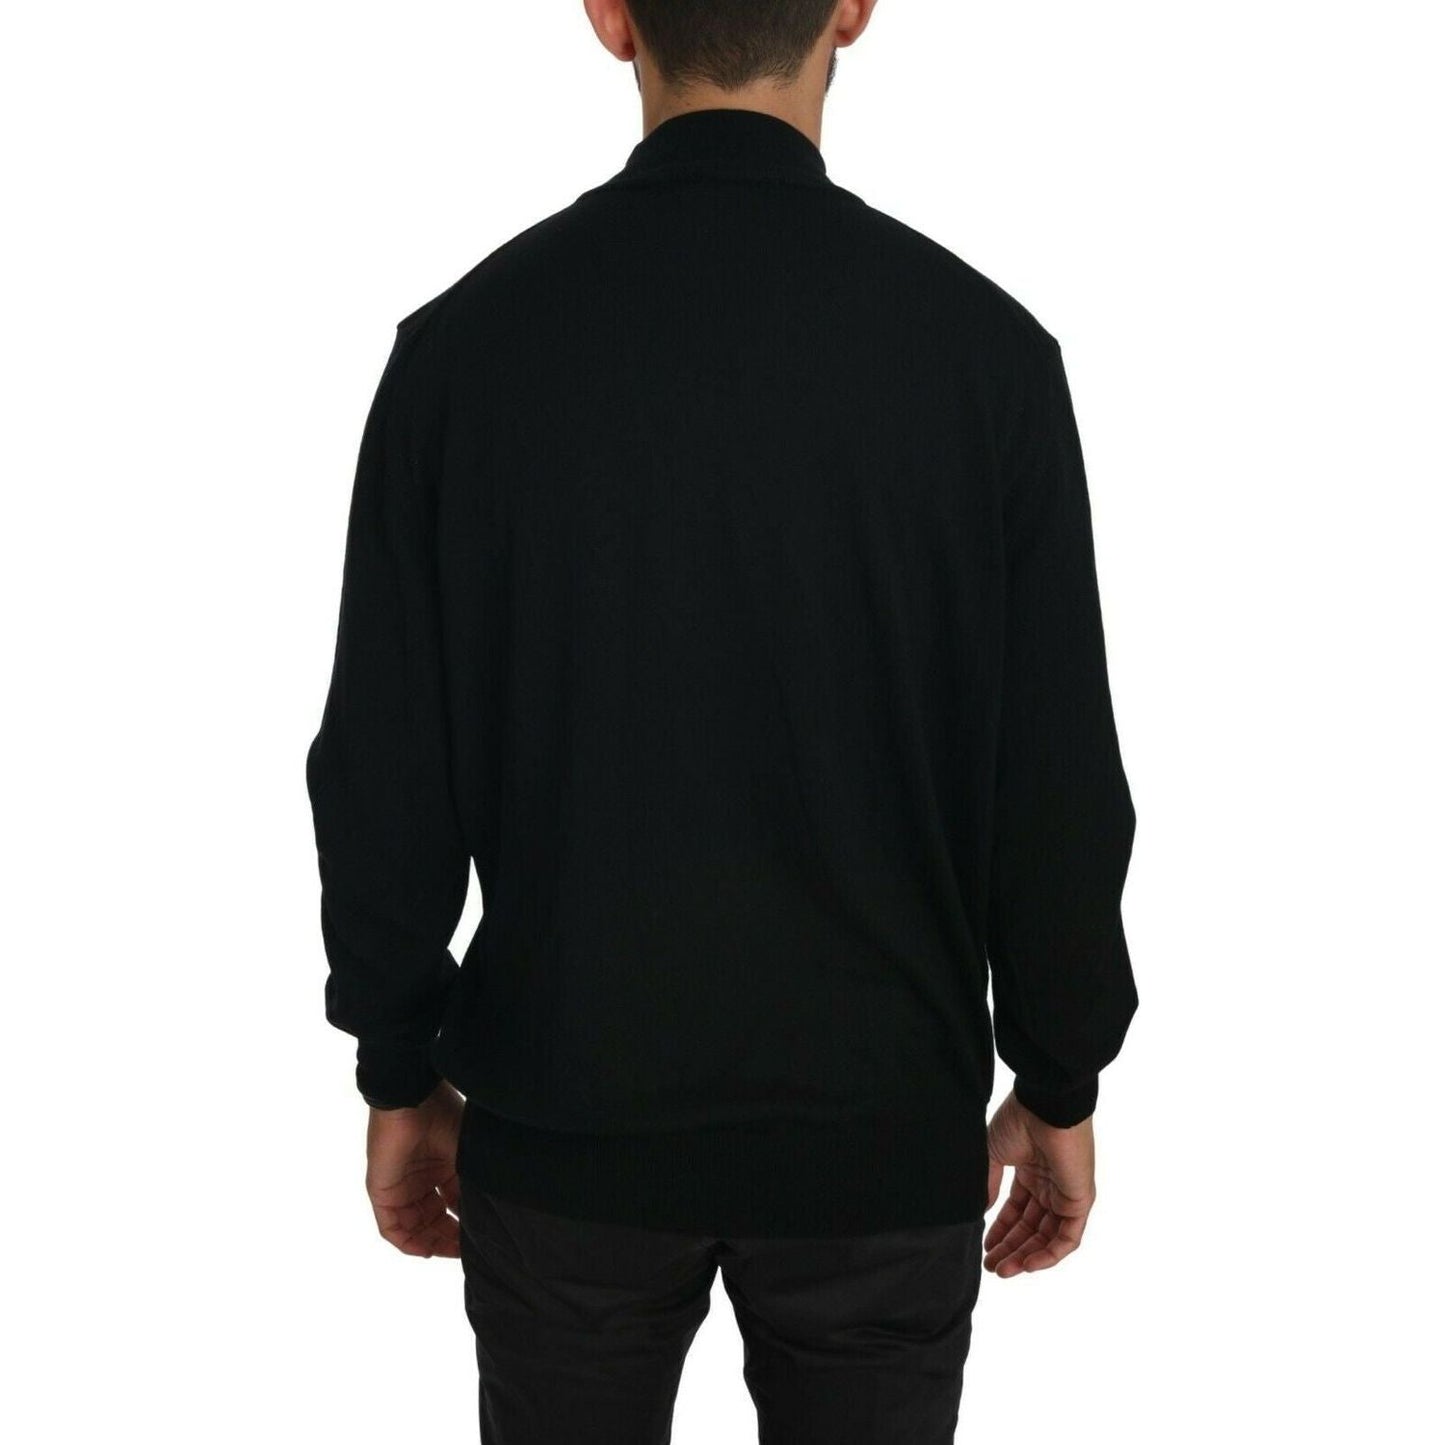 MILA SCHÖN Black Turtle Neck Pullover Top Virgin Wool Sweater black-turtle-neck-pullover-top-virgin-wool-sweater s-l1600-37-81fc1cb0-cea.jpg